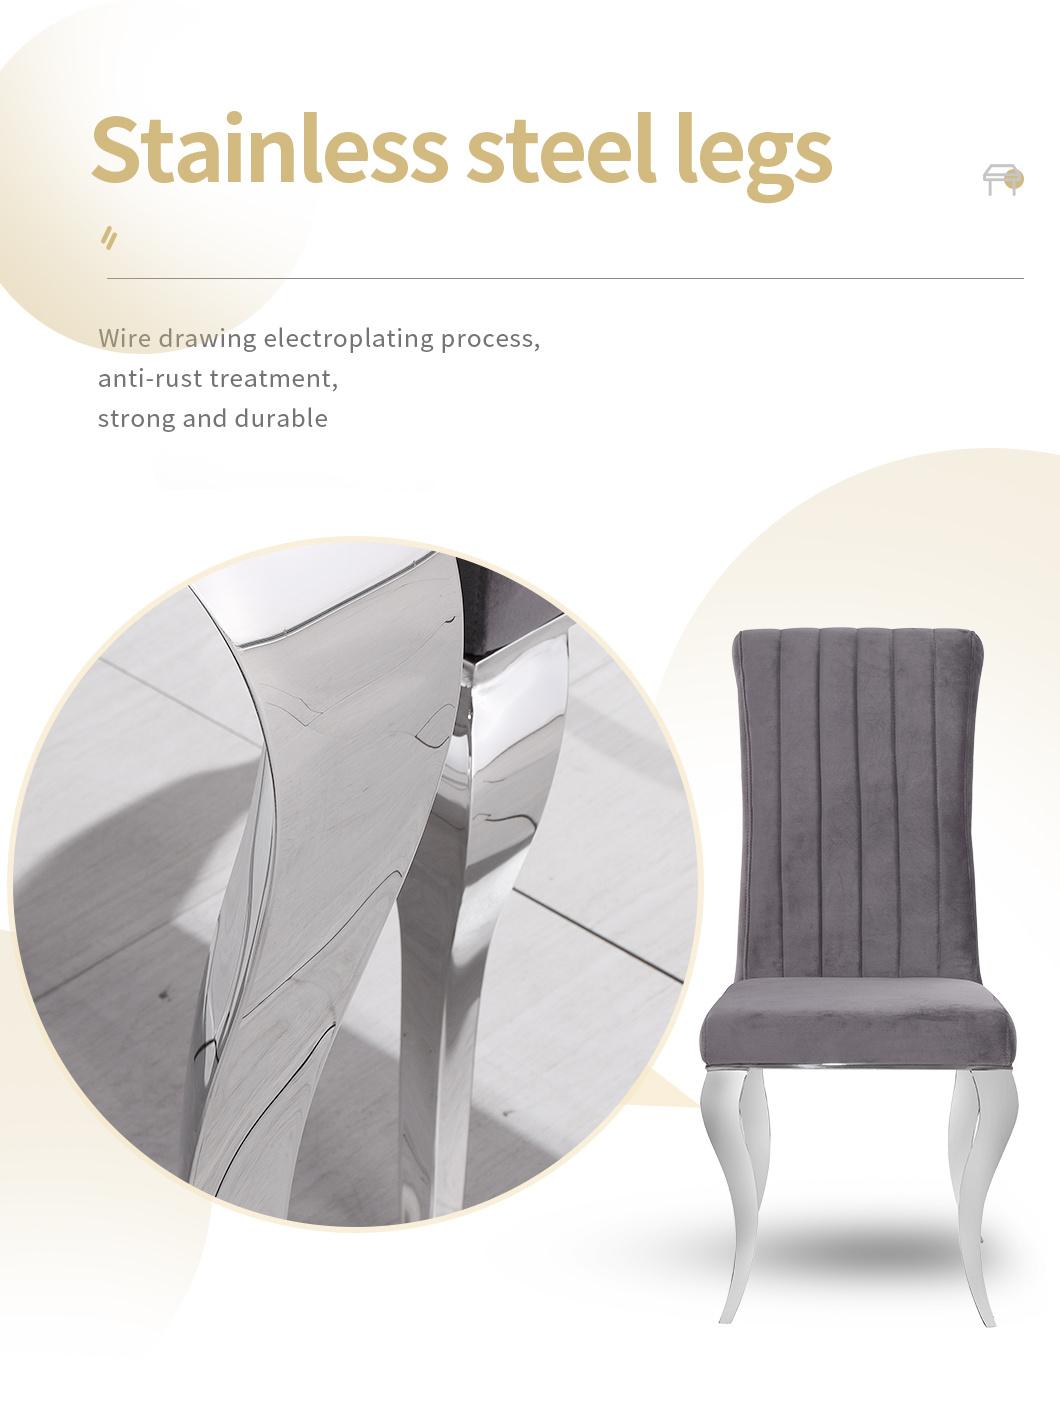 Modern European Style Dining Chair Stainless Steel Leg Velvet Dining Chair